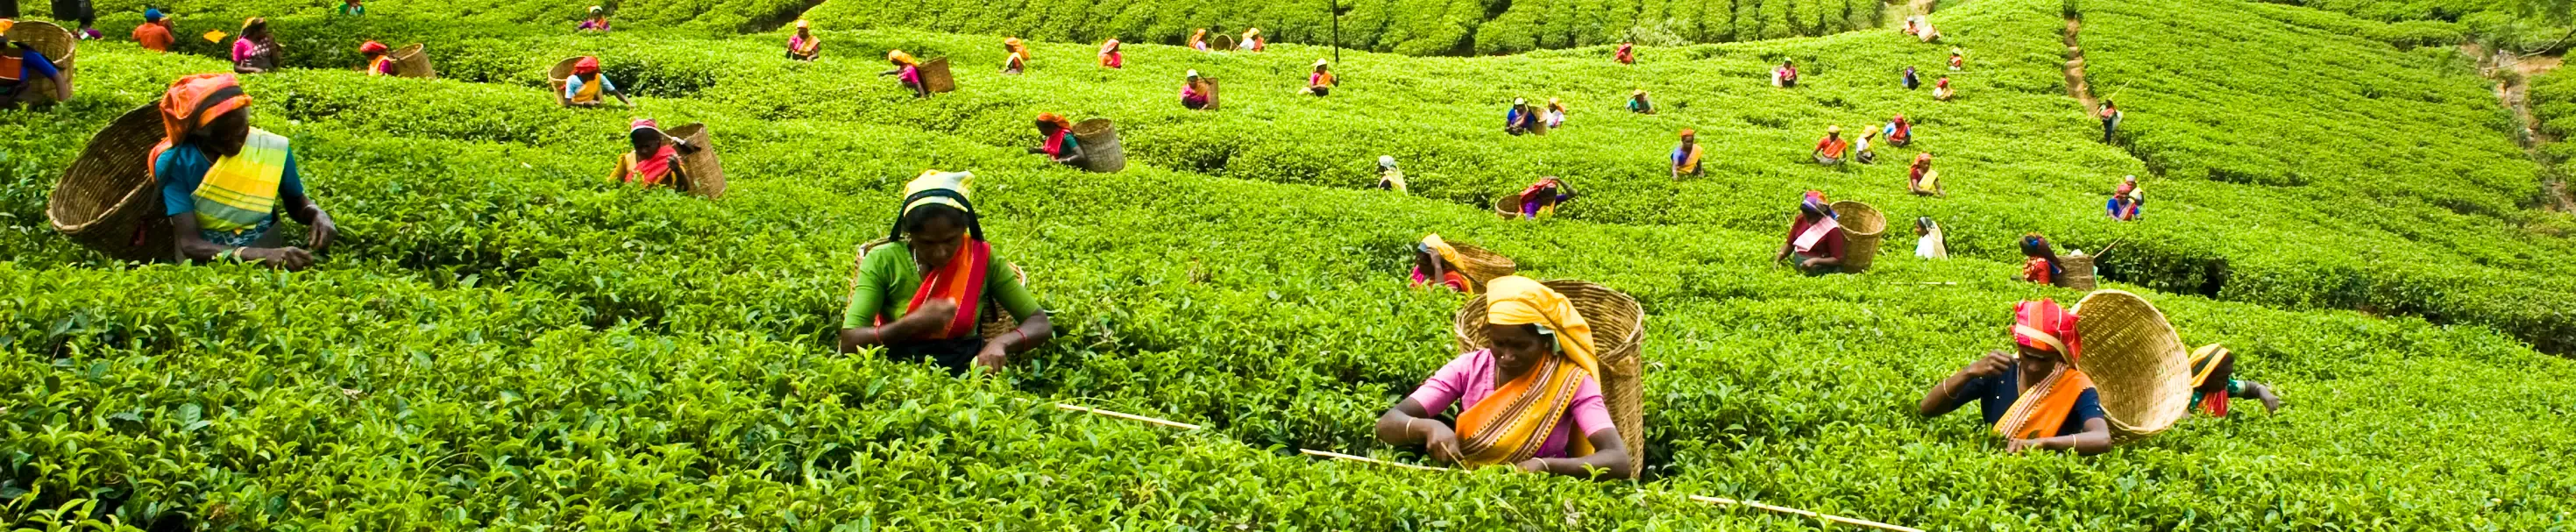 Tea pickers in the tea garden